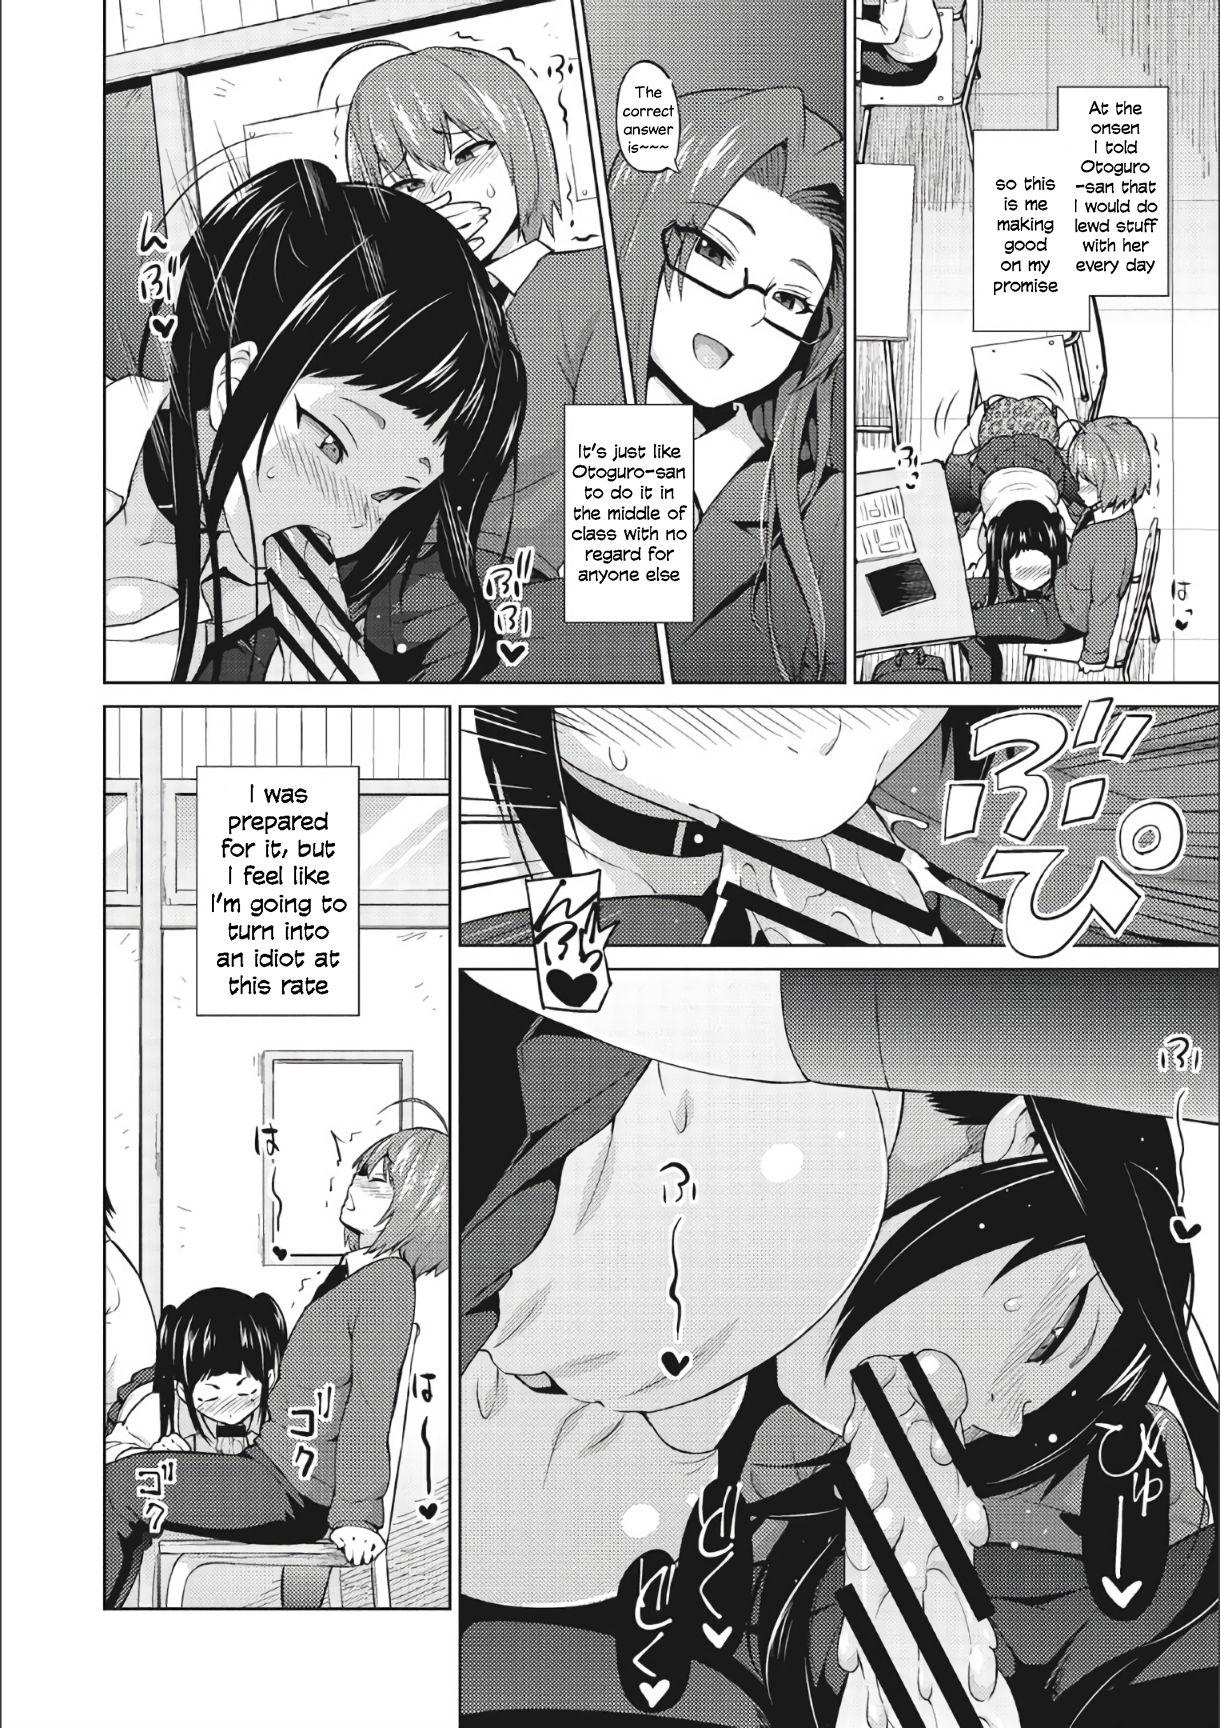 Curious Otoguro Miya no Oasobi #3 Suruba - Page 2